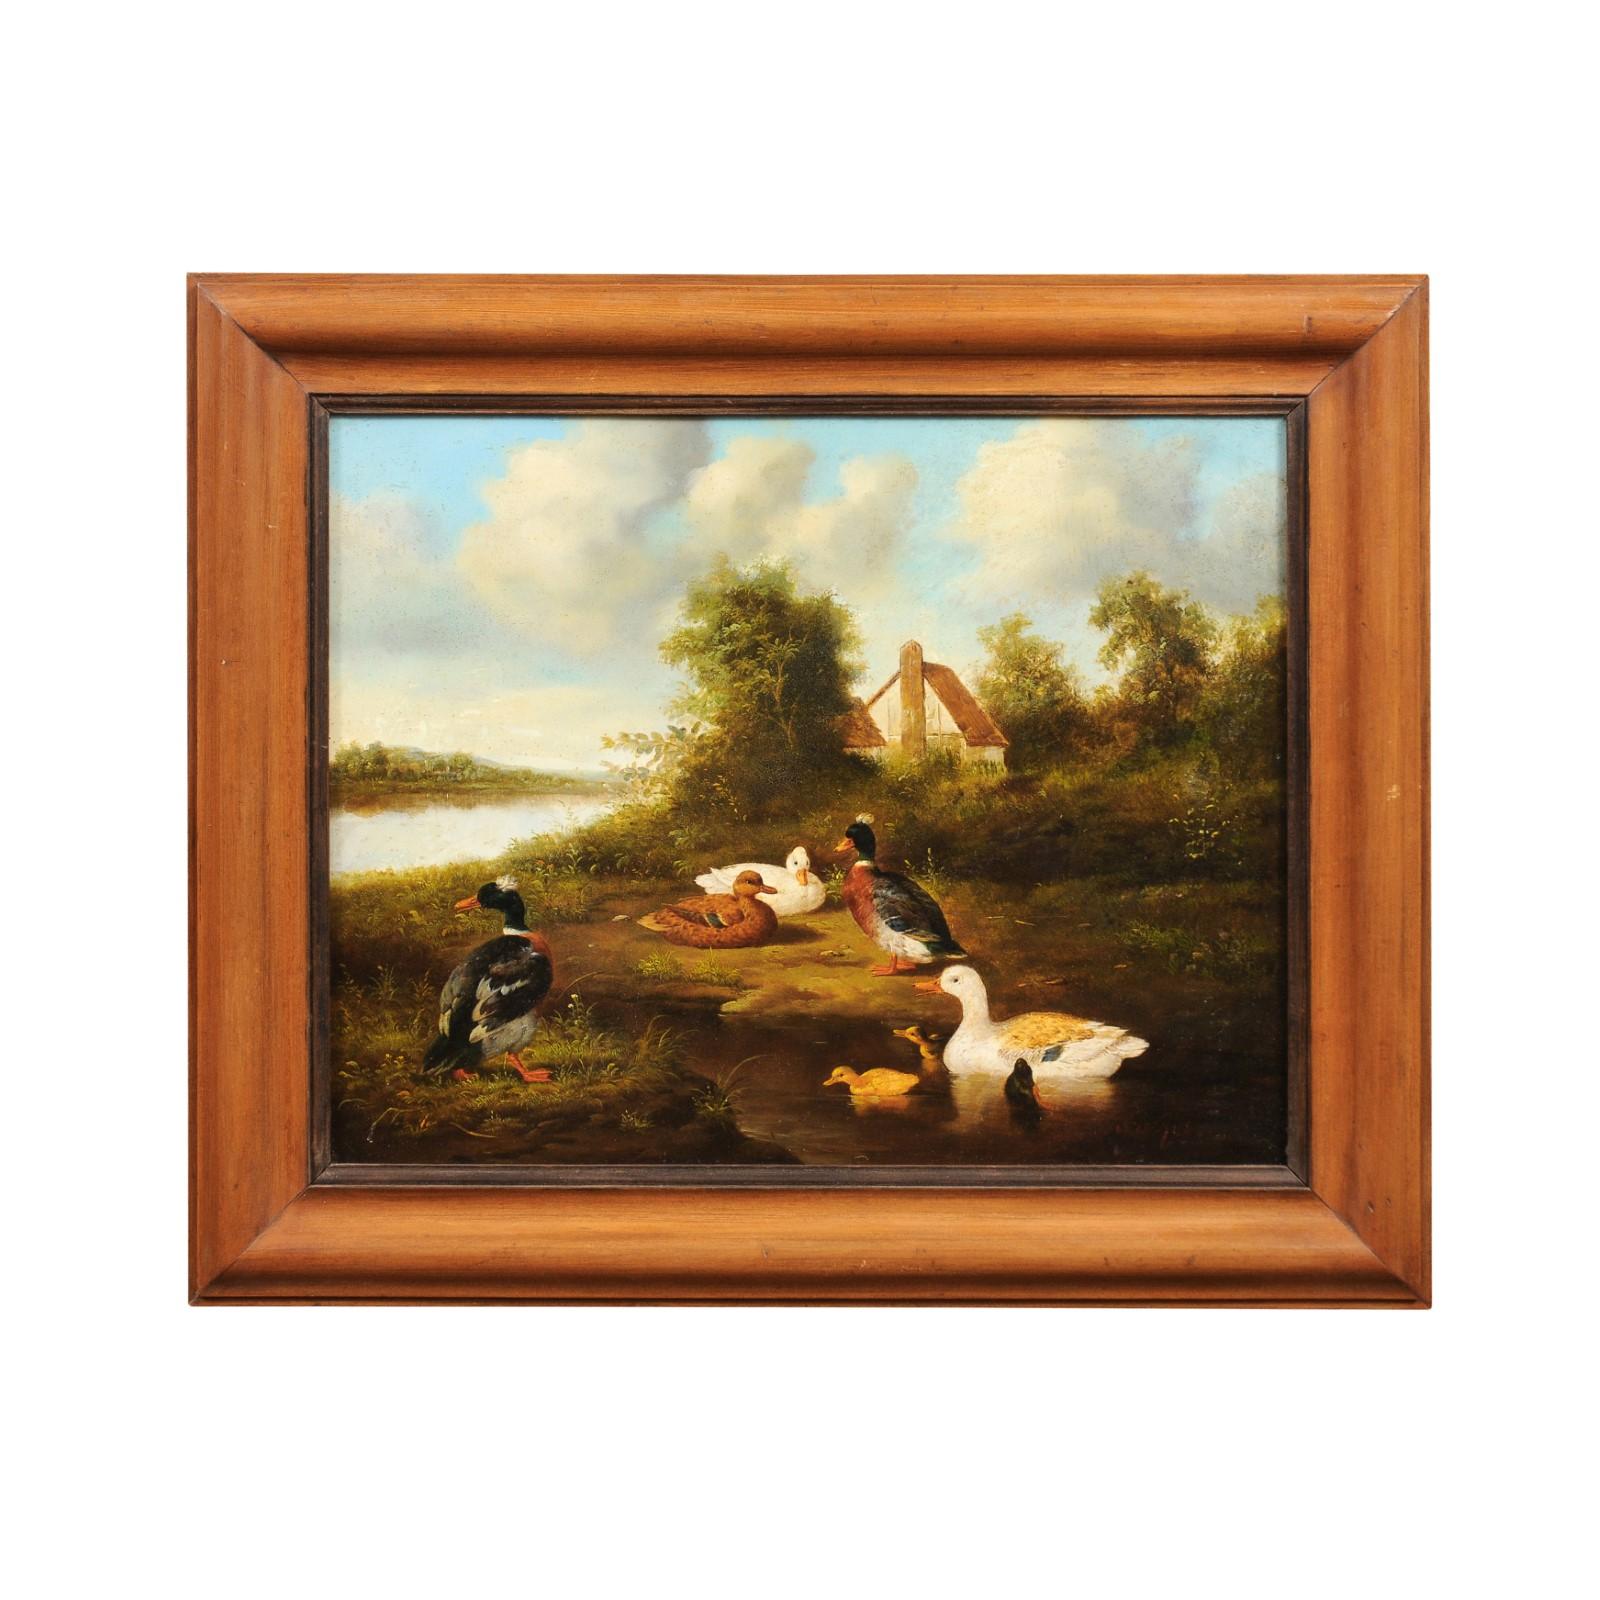 Ein französisches Ölgemälde auf einer Tafel aus der Mitte des 19. Jahrhunderts, das Enten in einer Landschaft abbildet. Dieses in Frankreich in den 1850er Jahren entstandene Ölgemälde zeigt eine friedliche Szene. Das Gemälde zeigt leuchtende,